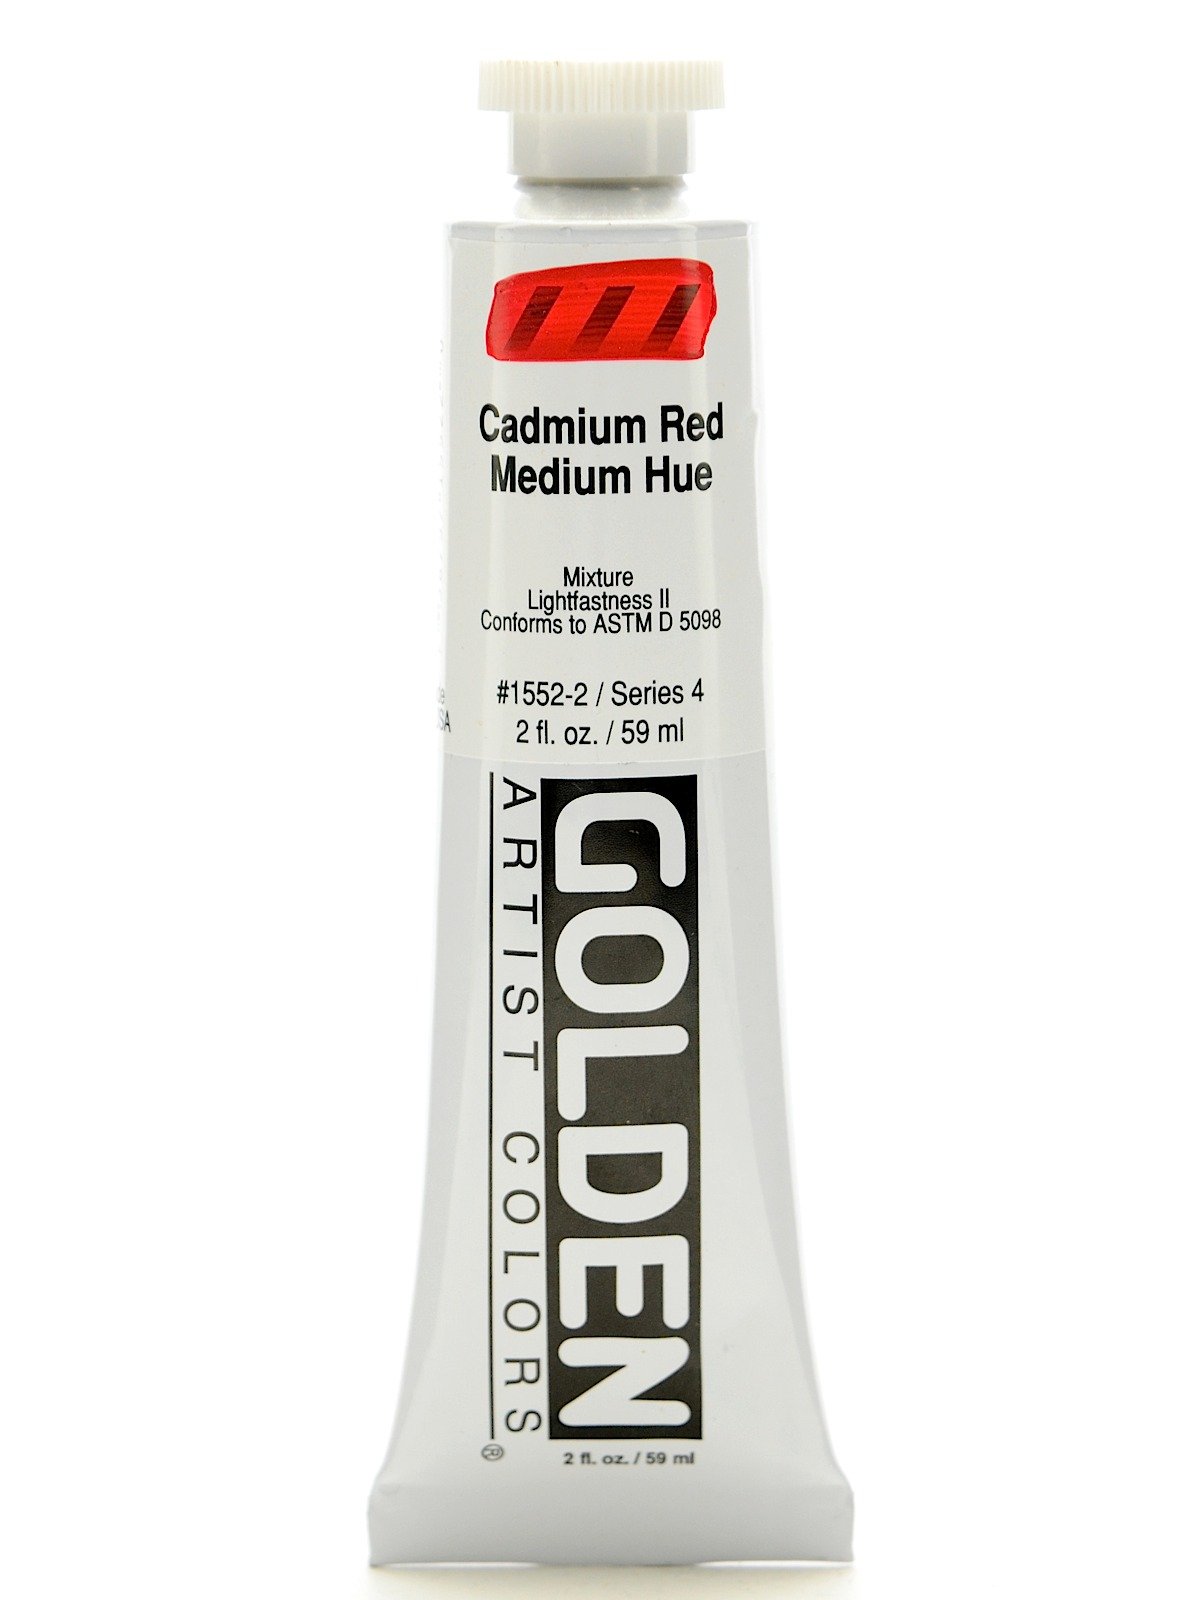 Cadmium Red Medium Hue